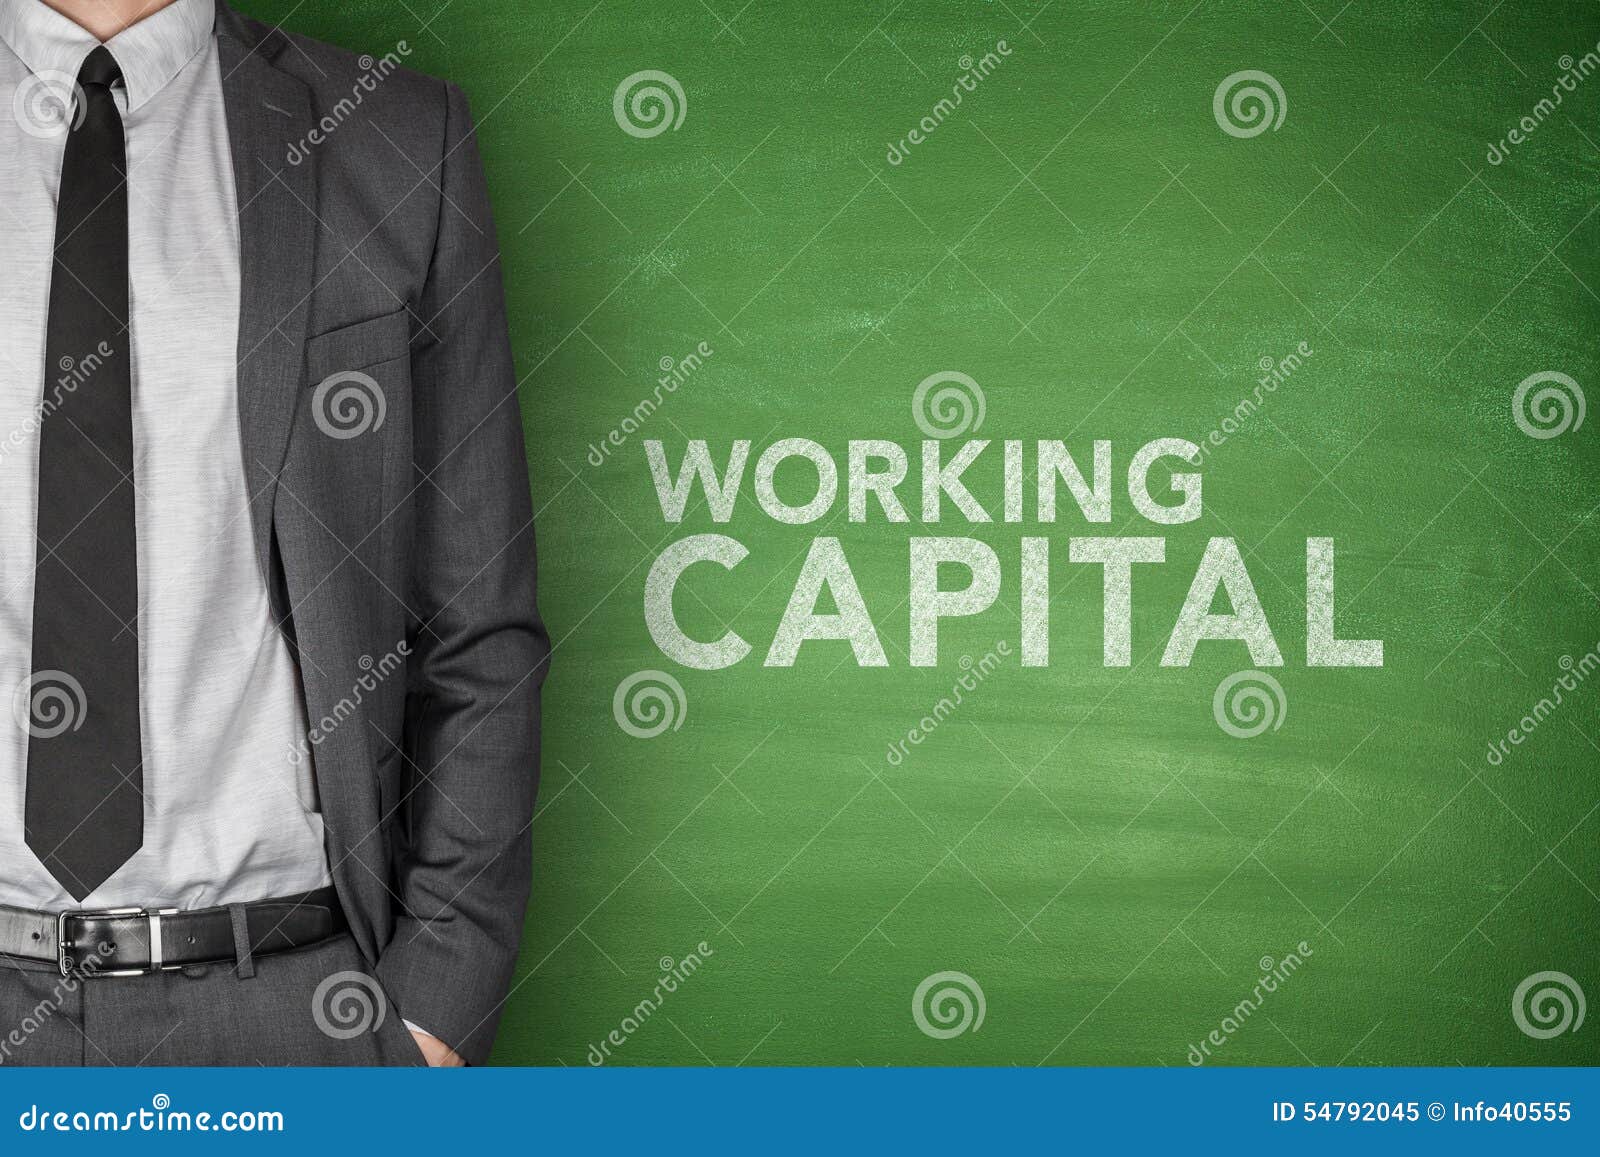 working capital on blackboard